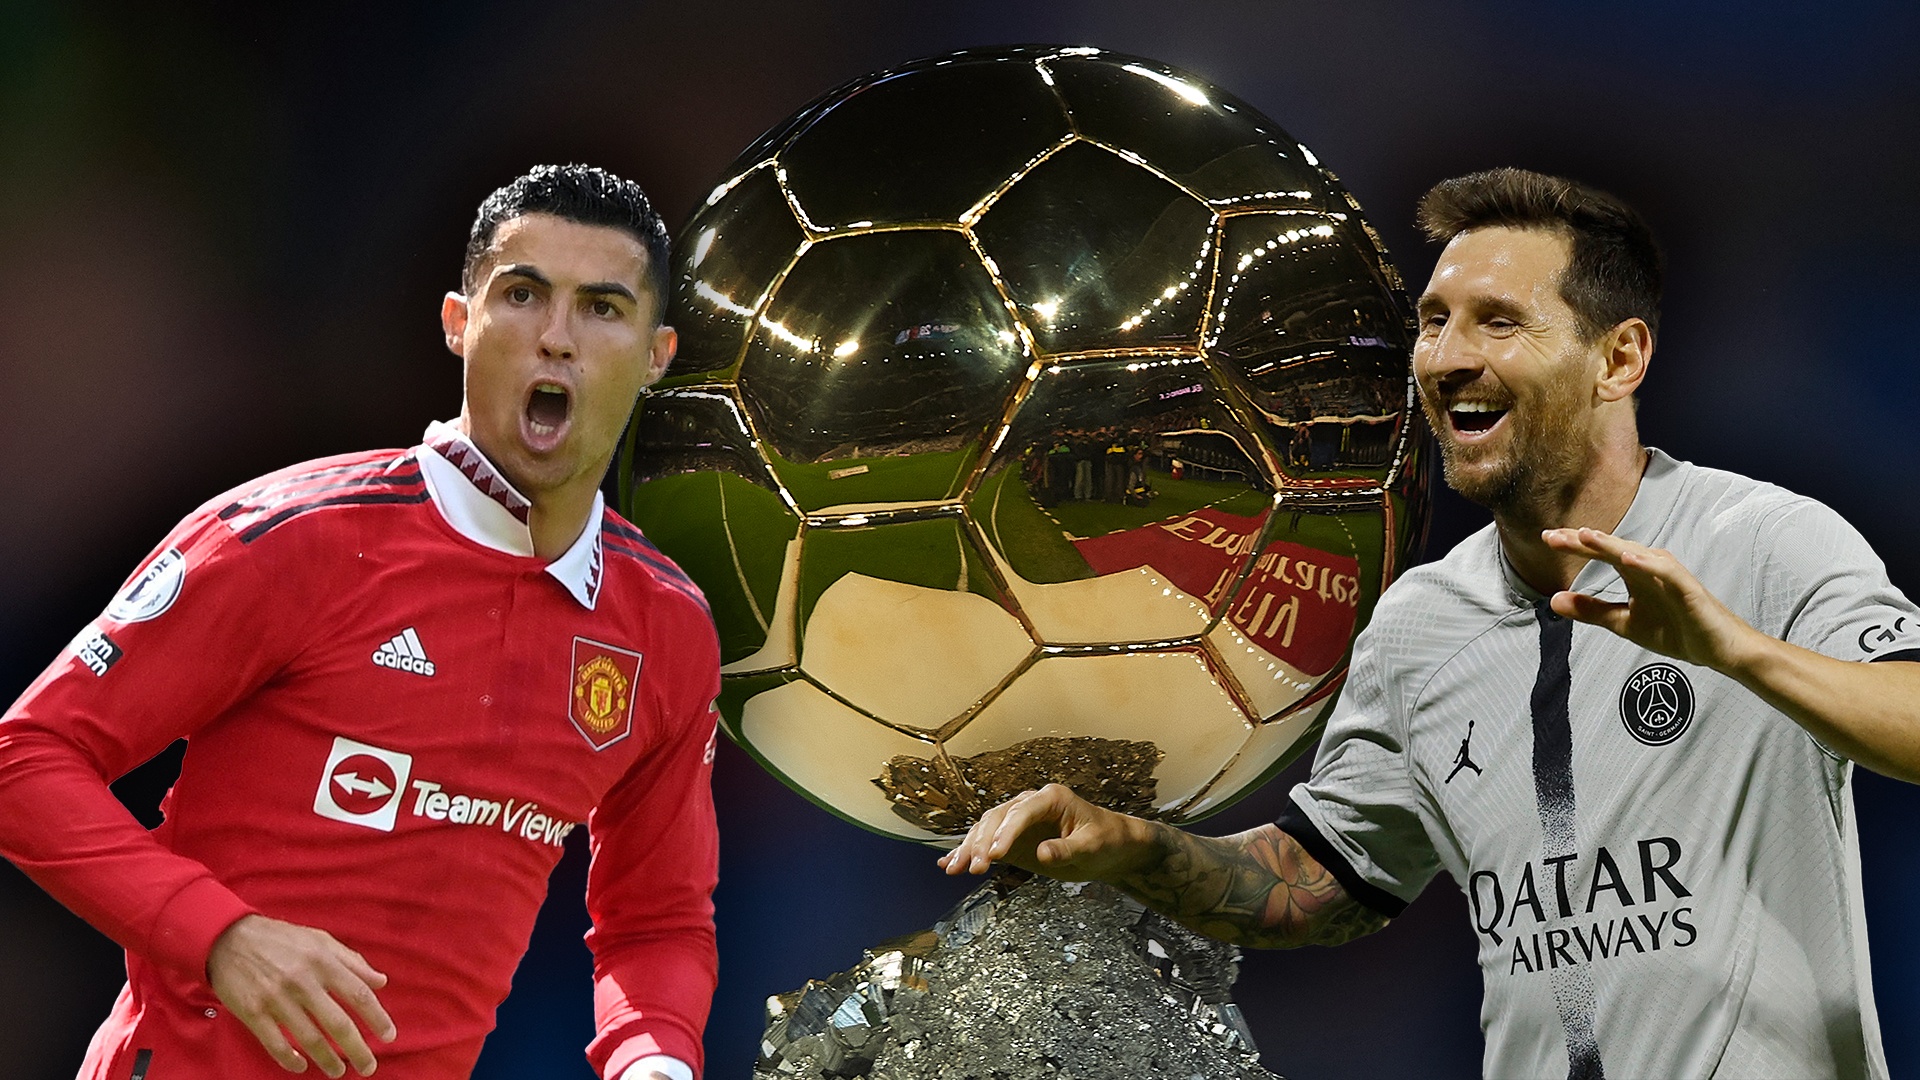 Por qué Messi no fue nominado al Balón de Oro y sí eligieron a Cristiano Ronaldo entre los 30 candidatos